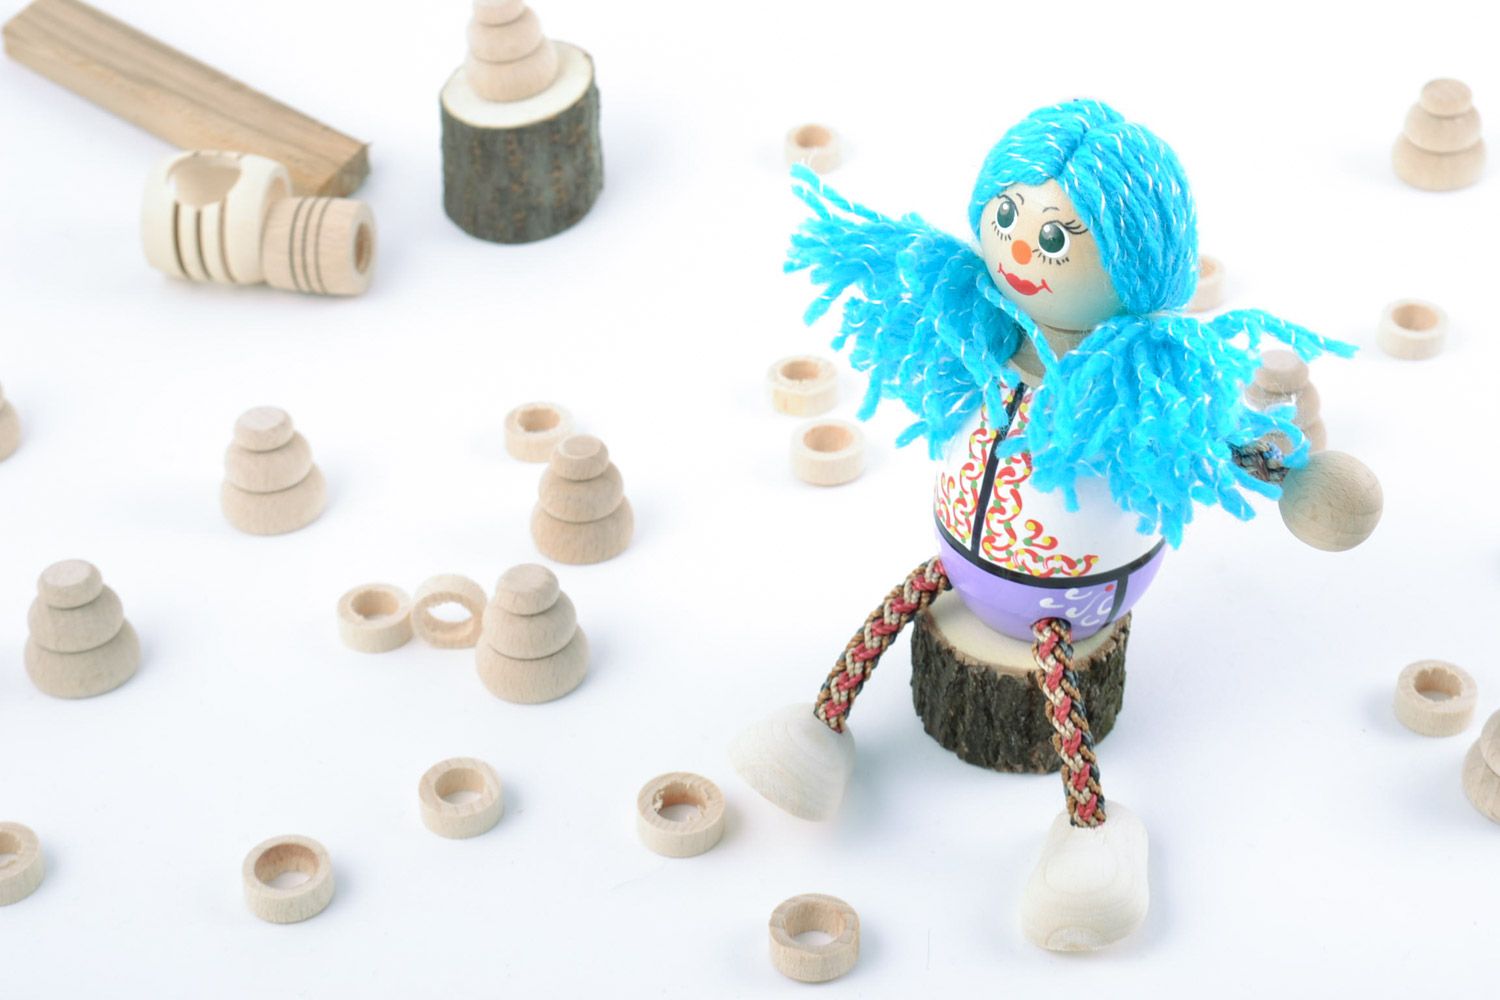 Petit jouet artisanal fait main écologique peint Fille aux cheveux bleus photo 1